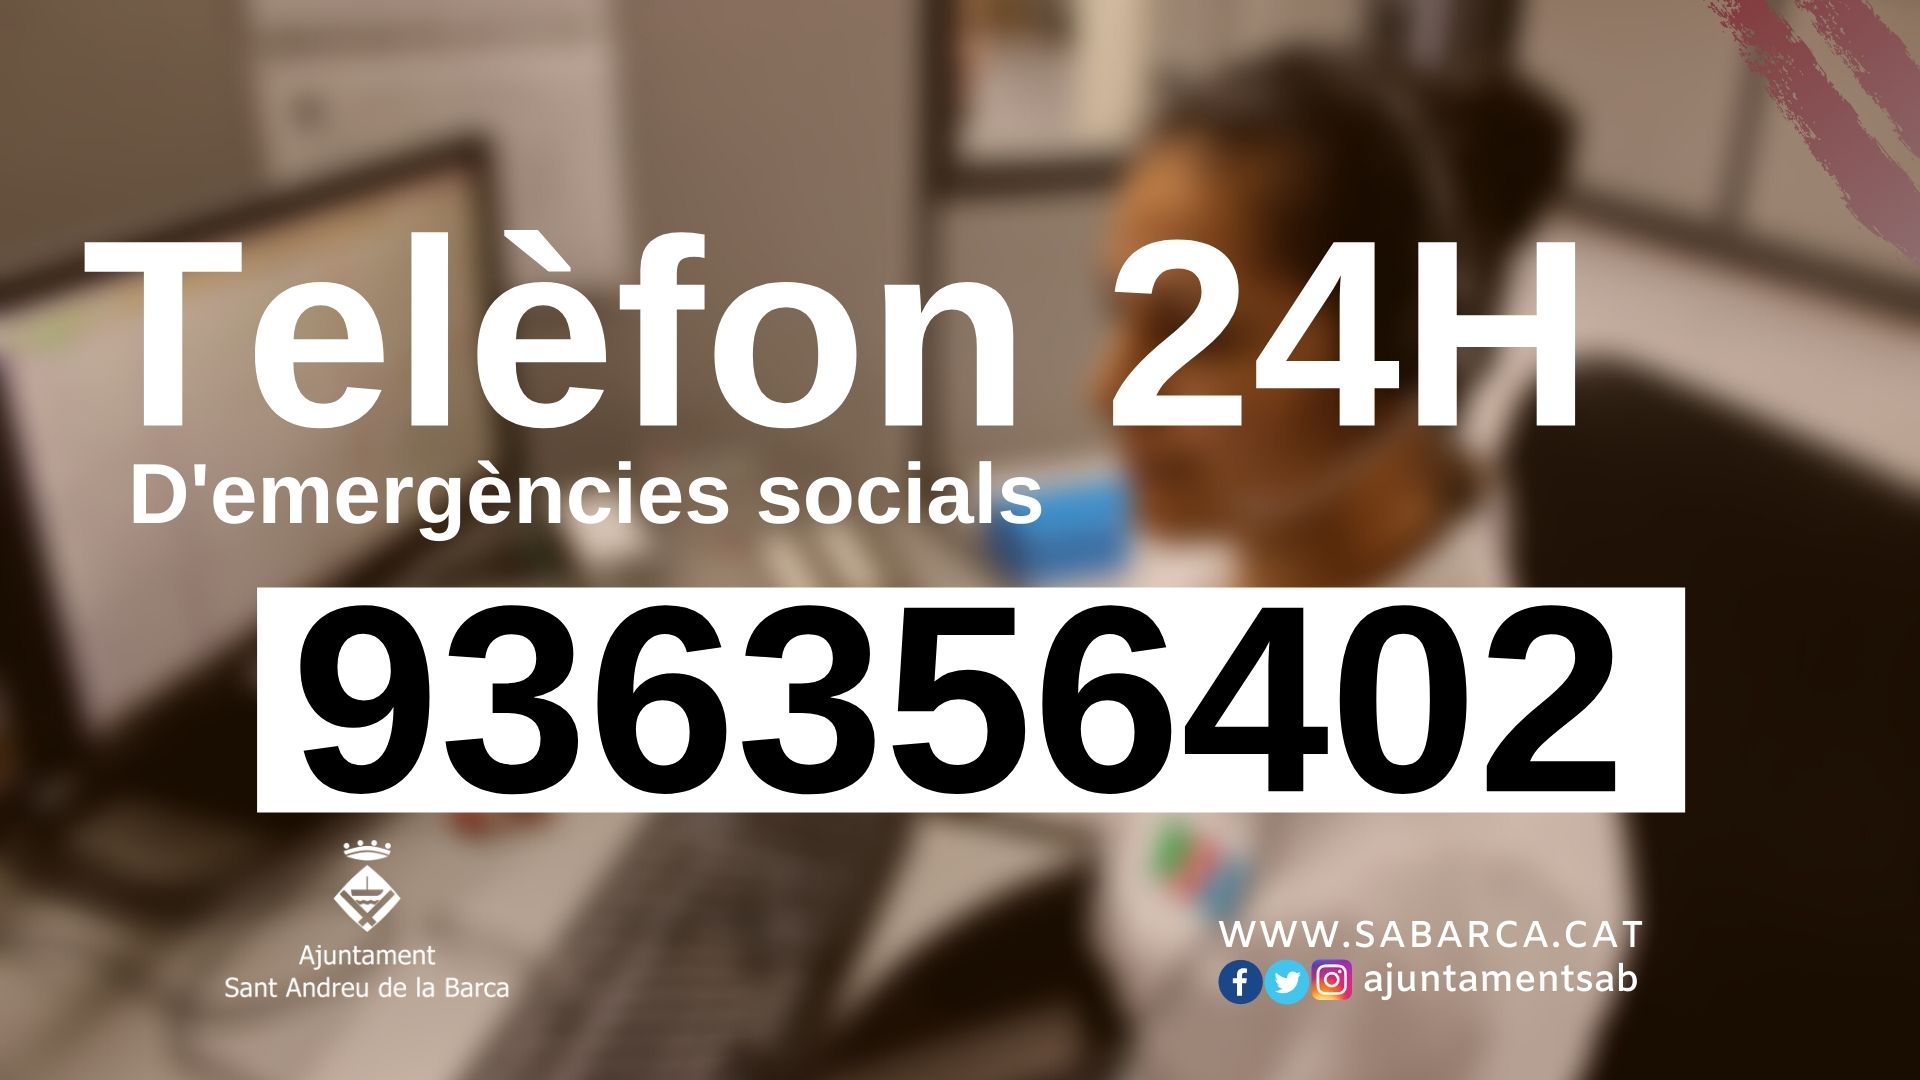 L’Ajuntament de Sant Andreu de la Barca habilita un número de telèfon per atendre 24 hores al dia emergències socials